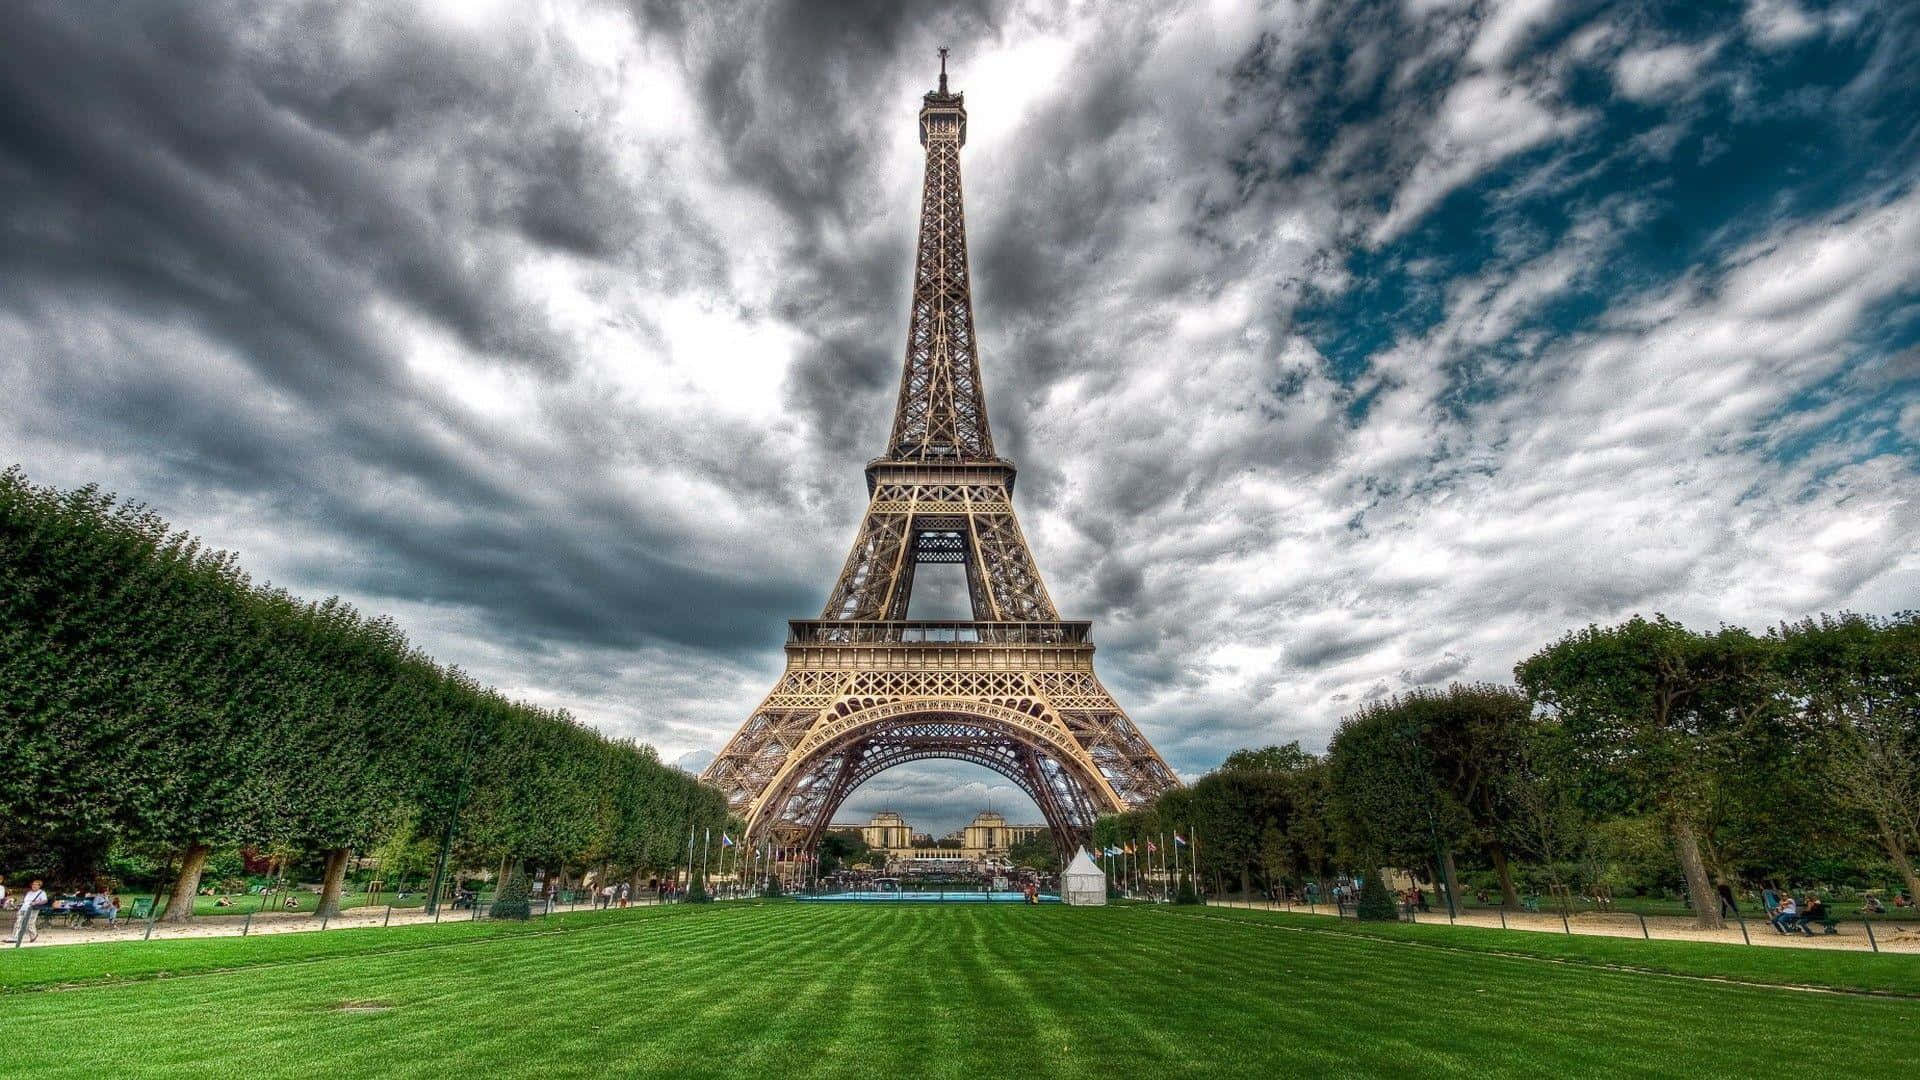 Ituristi E I Residenti Visitano L'iconica Torre Eiffel A Parigi, In Francia.